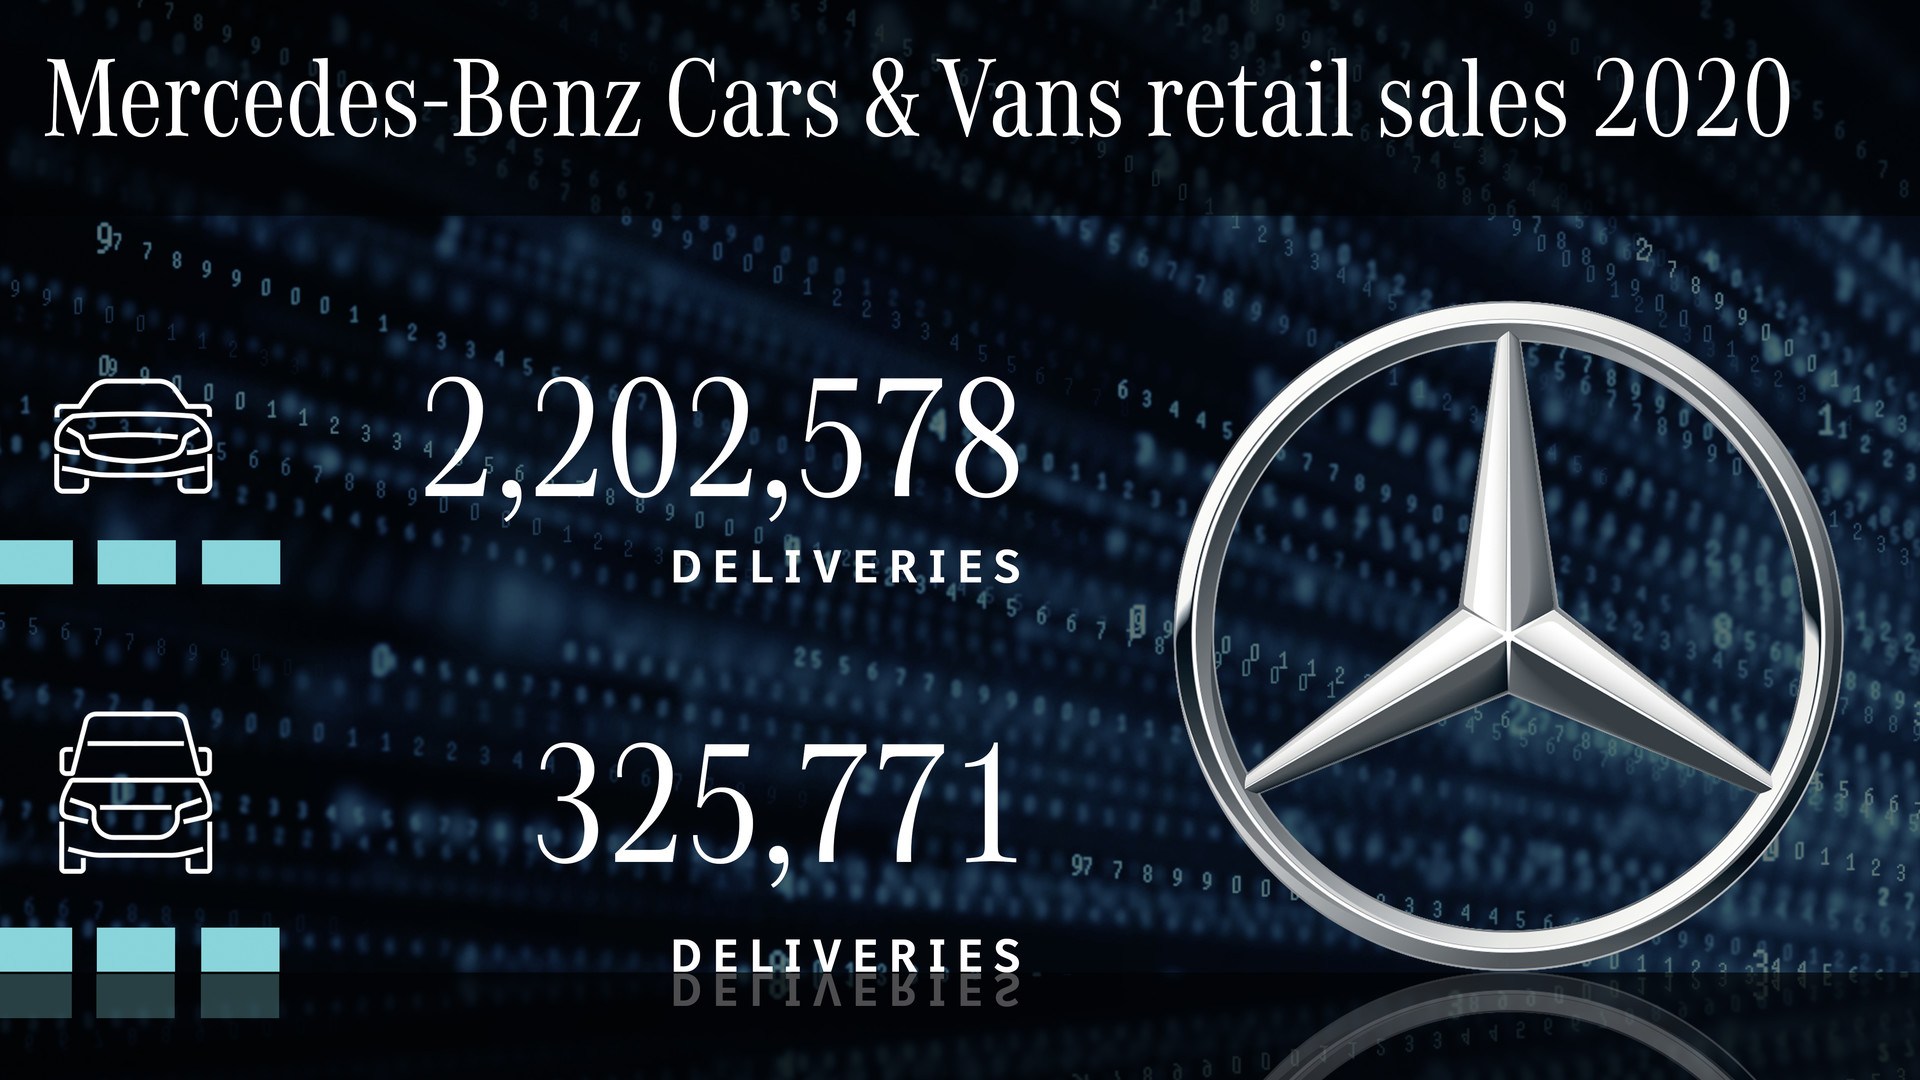 Divízia Mercedes-Benz Cars dosahuje trojnásobný celosvetový predaj modelov xEV a dosahuje tým aj európske cieľové hodnoty CO2 pre osobné motorové vozidlá v roku 2020